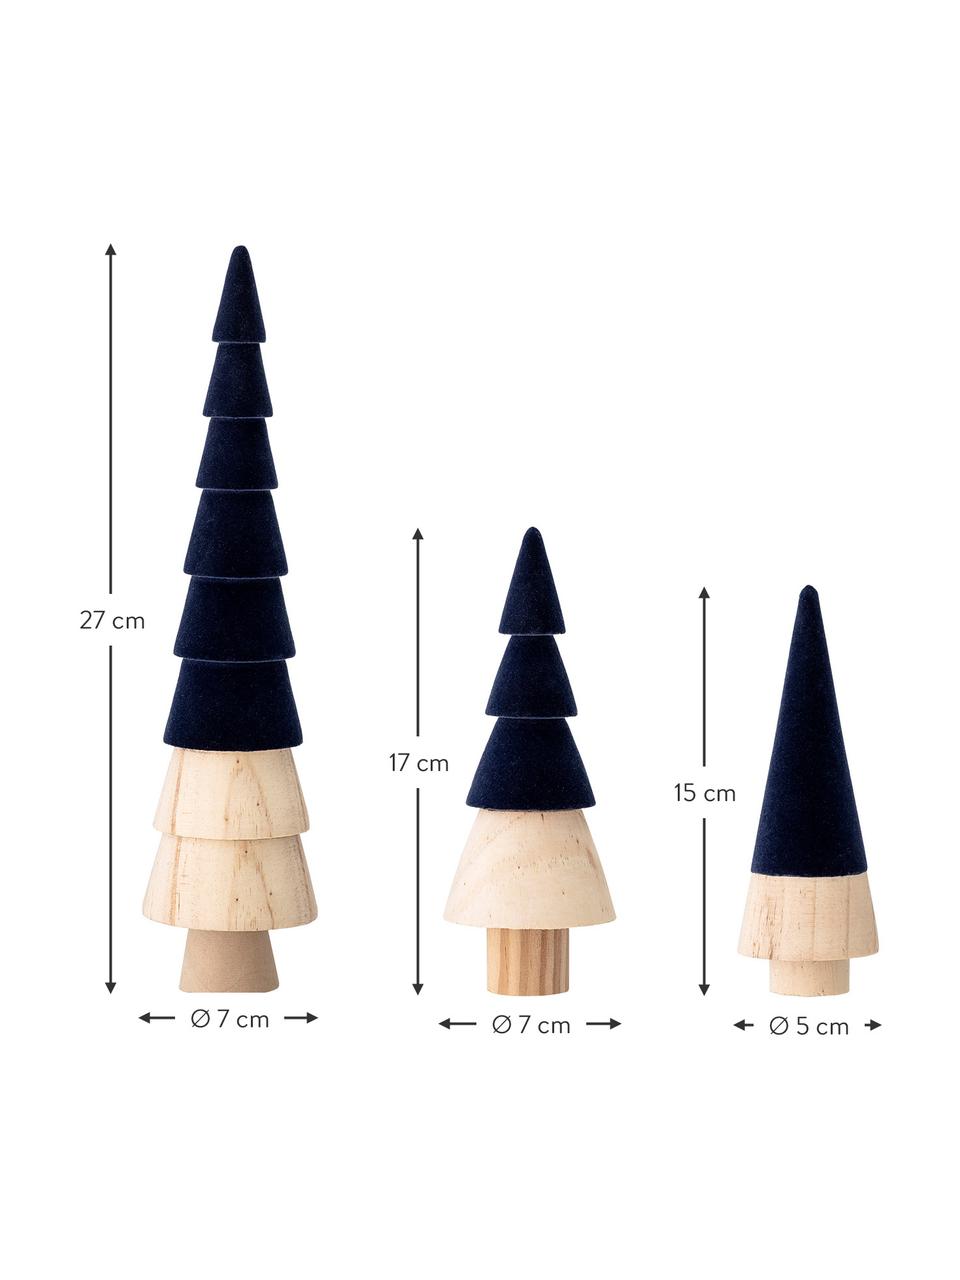 Samt-Deko-Bäume-Set Thace, 3 Stück, Holz, Polyestersamt, Dunkelblau, Holz, Set mit verschiedenen Größen